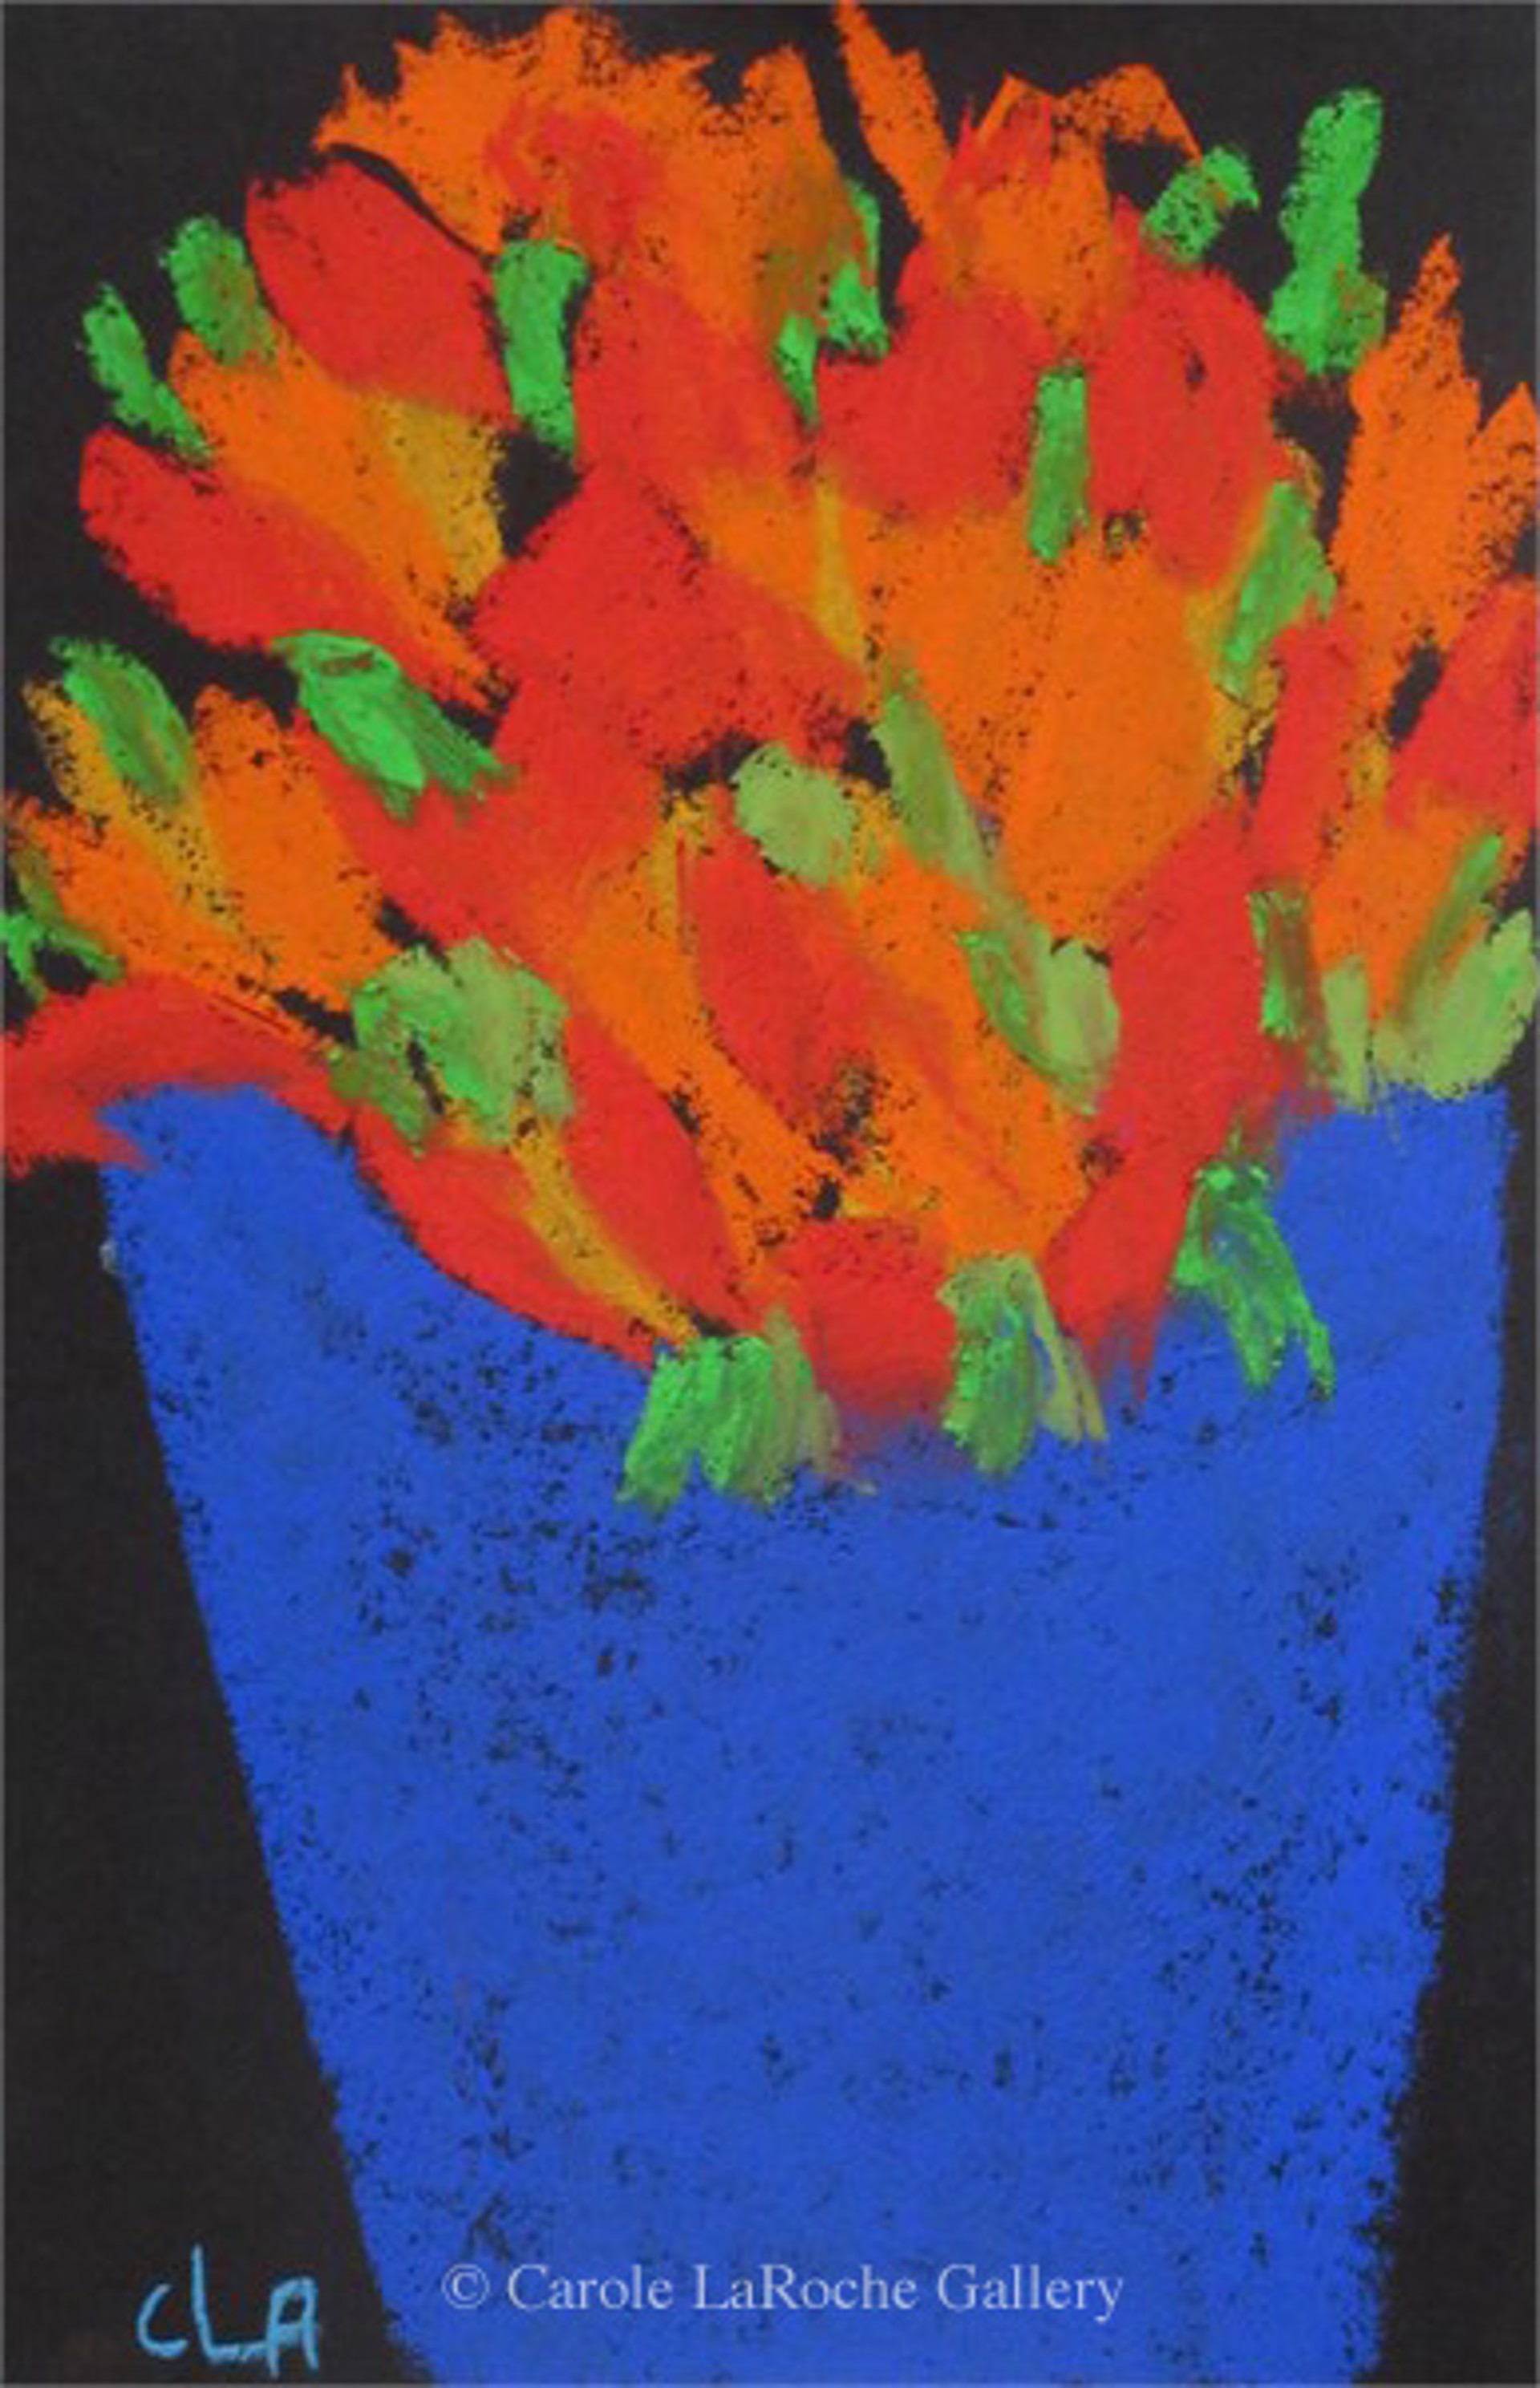 FLOWERS IN BLUE VASE by Carole LaRoche